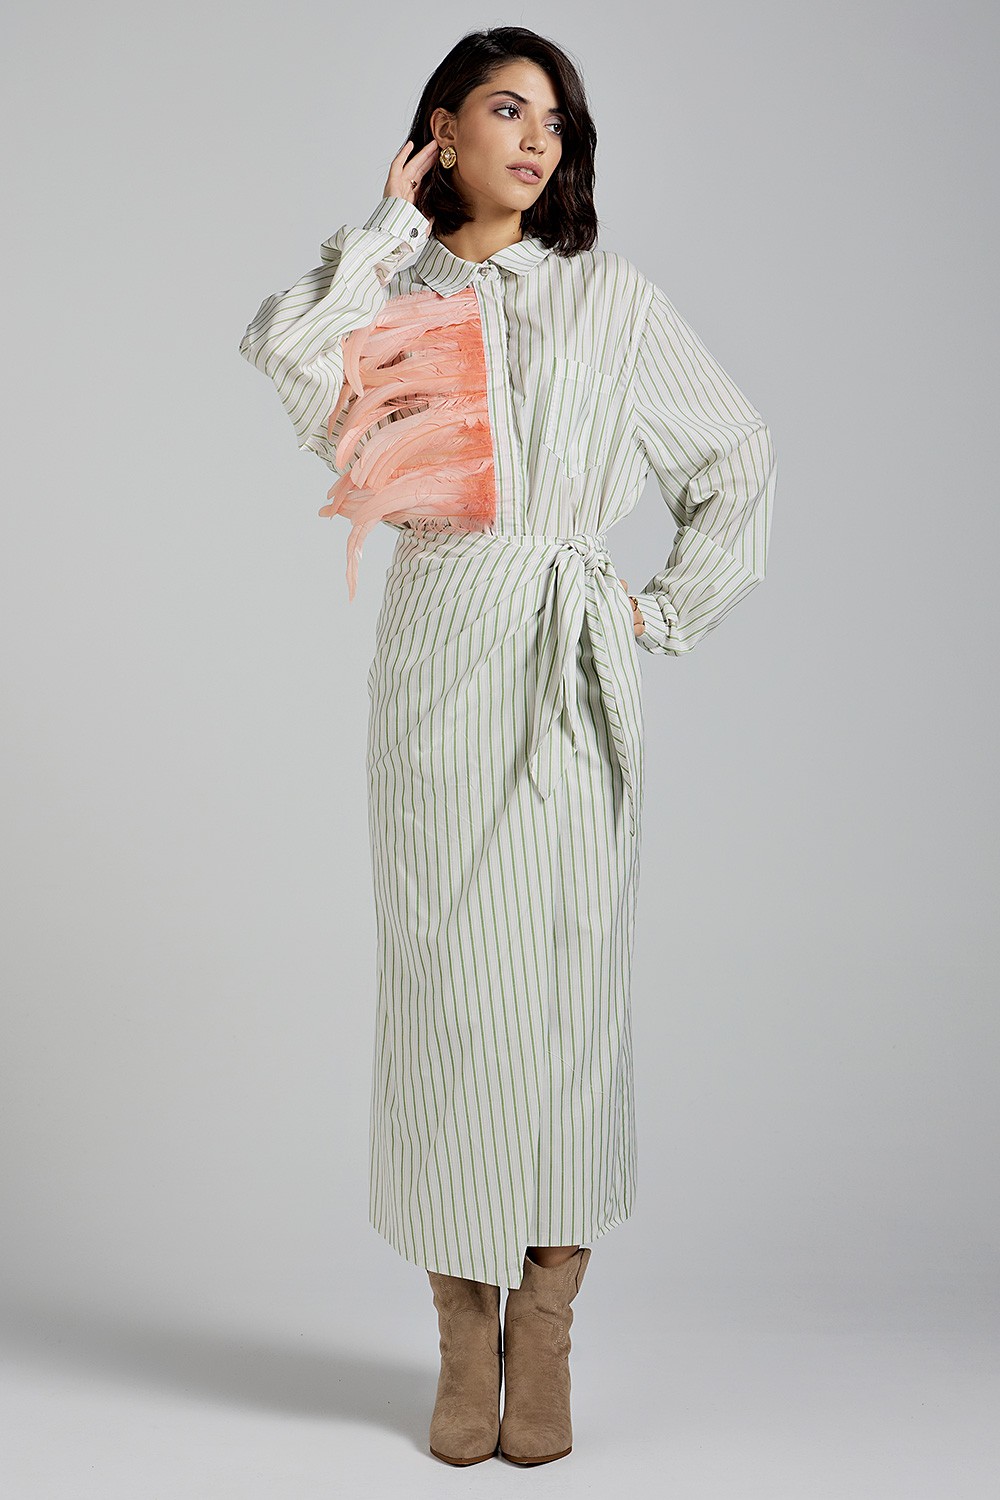 MILKWHITE wrap striped skirt